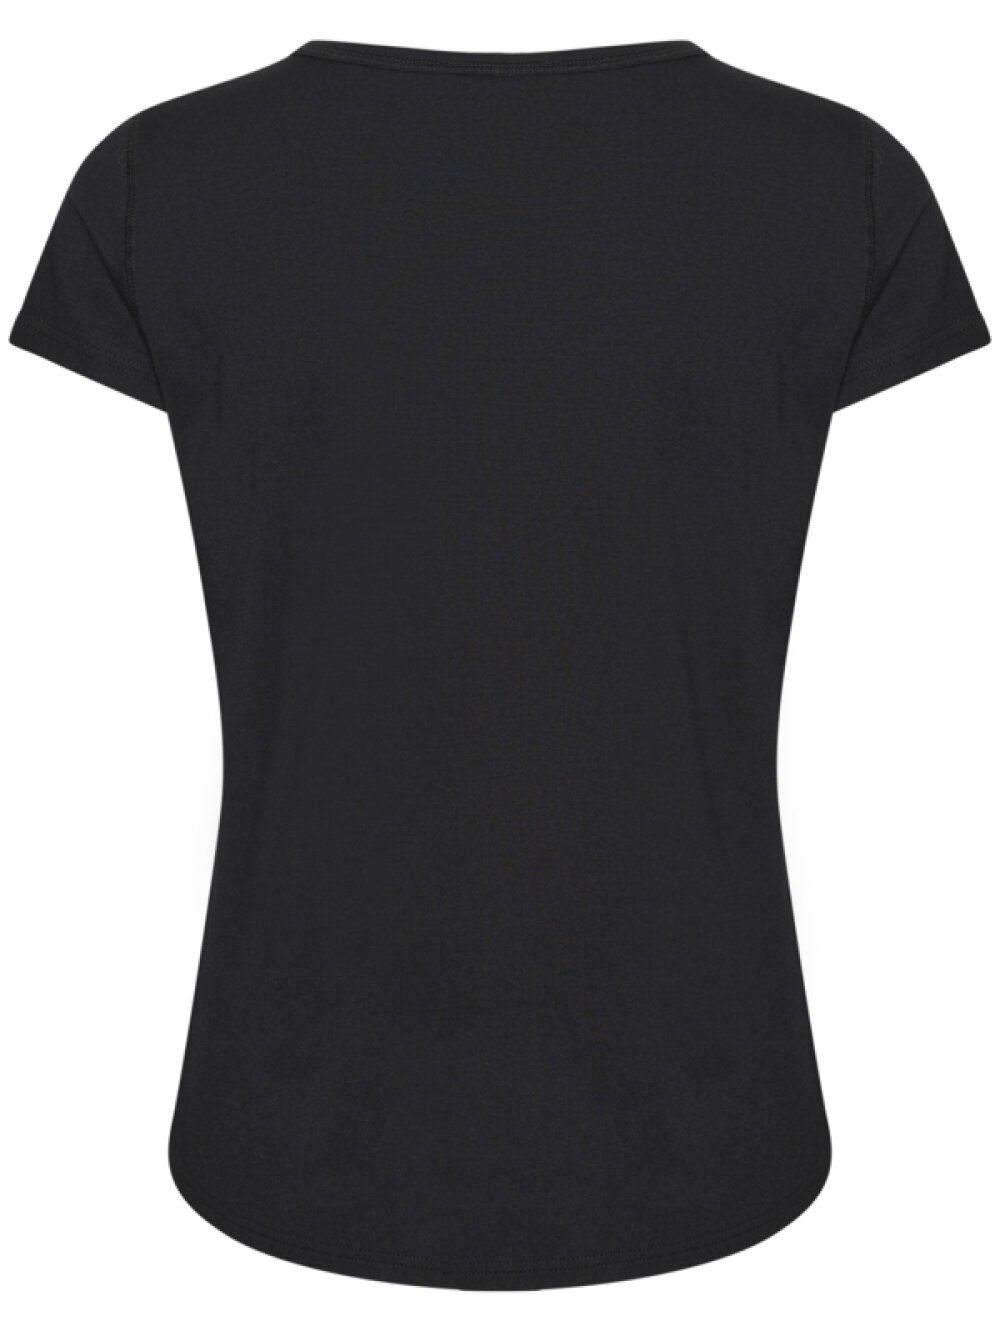 My Essential Wardrobe - My Essential Wardrobe 16 The Modal Tee T-shirt 100031